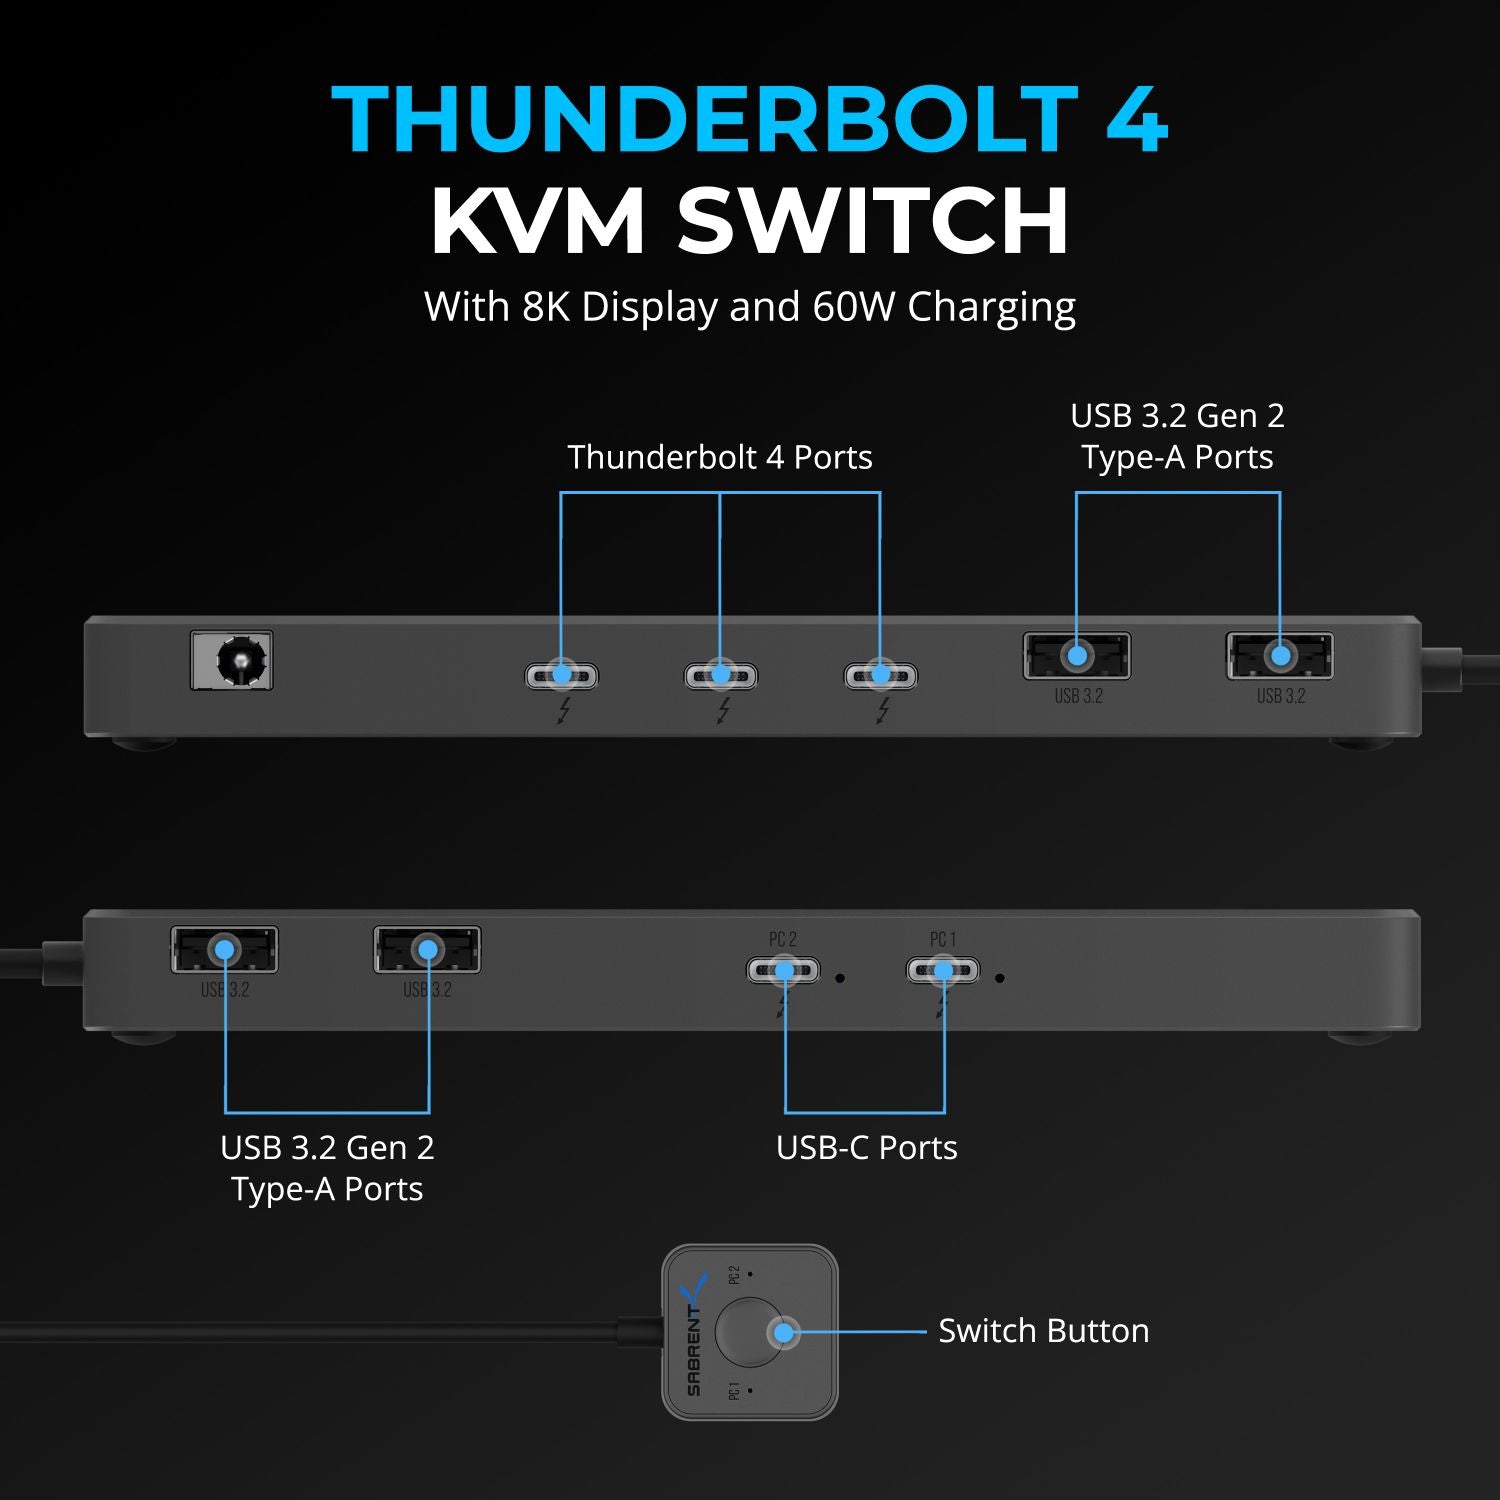 Thunderbolt 4 KVM Switch - Sabrent